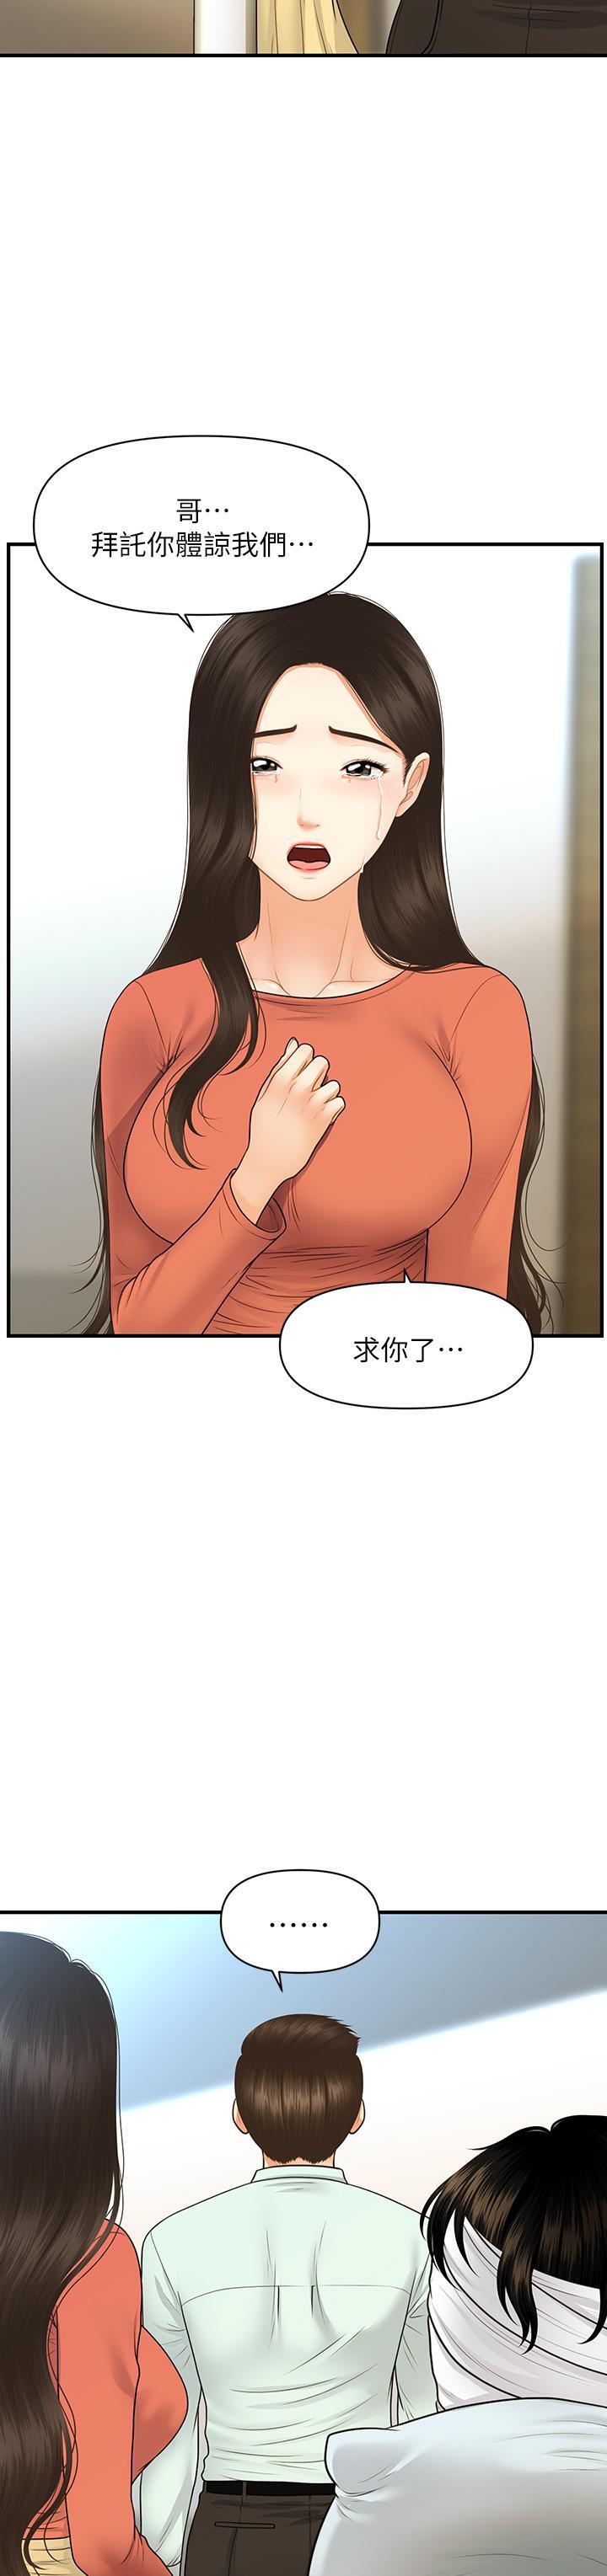 《医美奇鸡》漫画 第84话-我很爱...永俊哥...